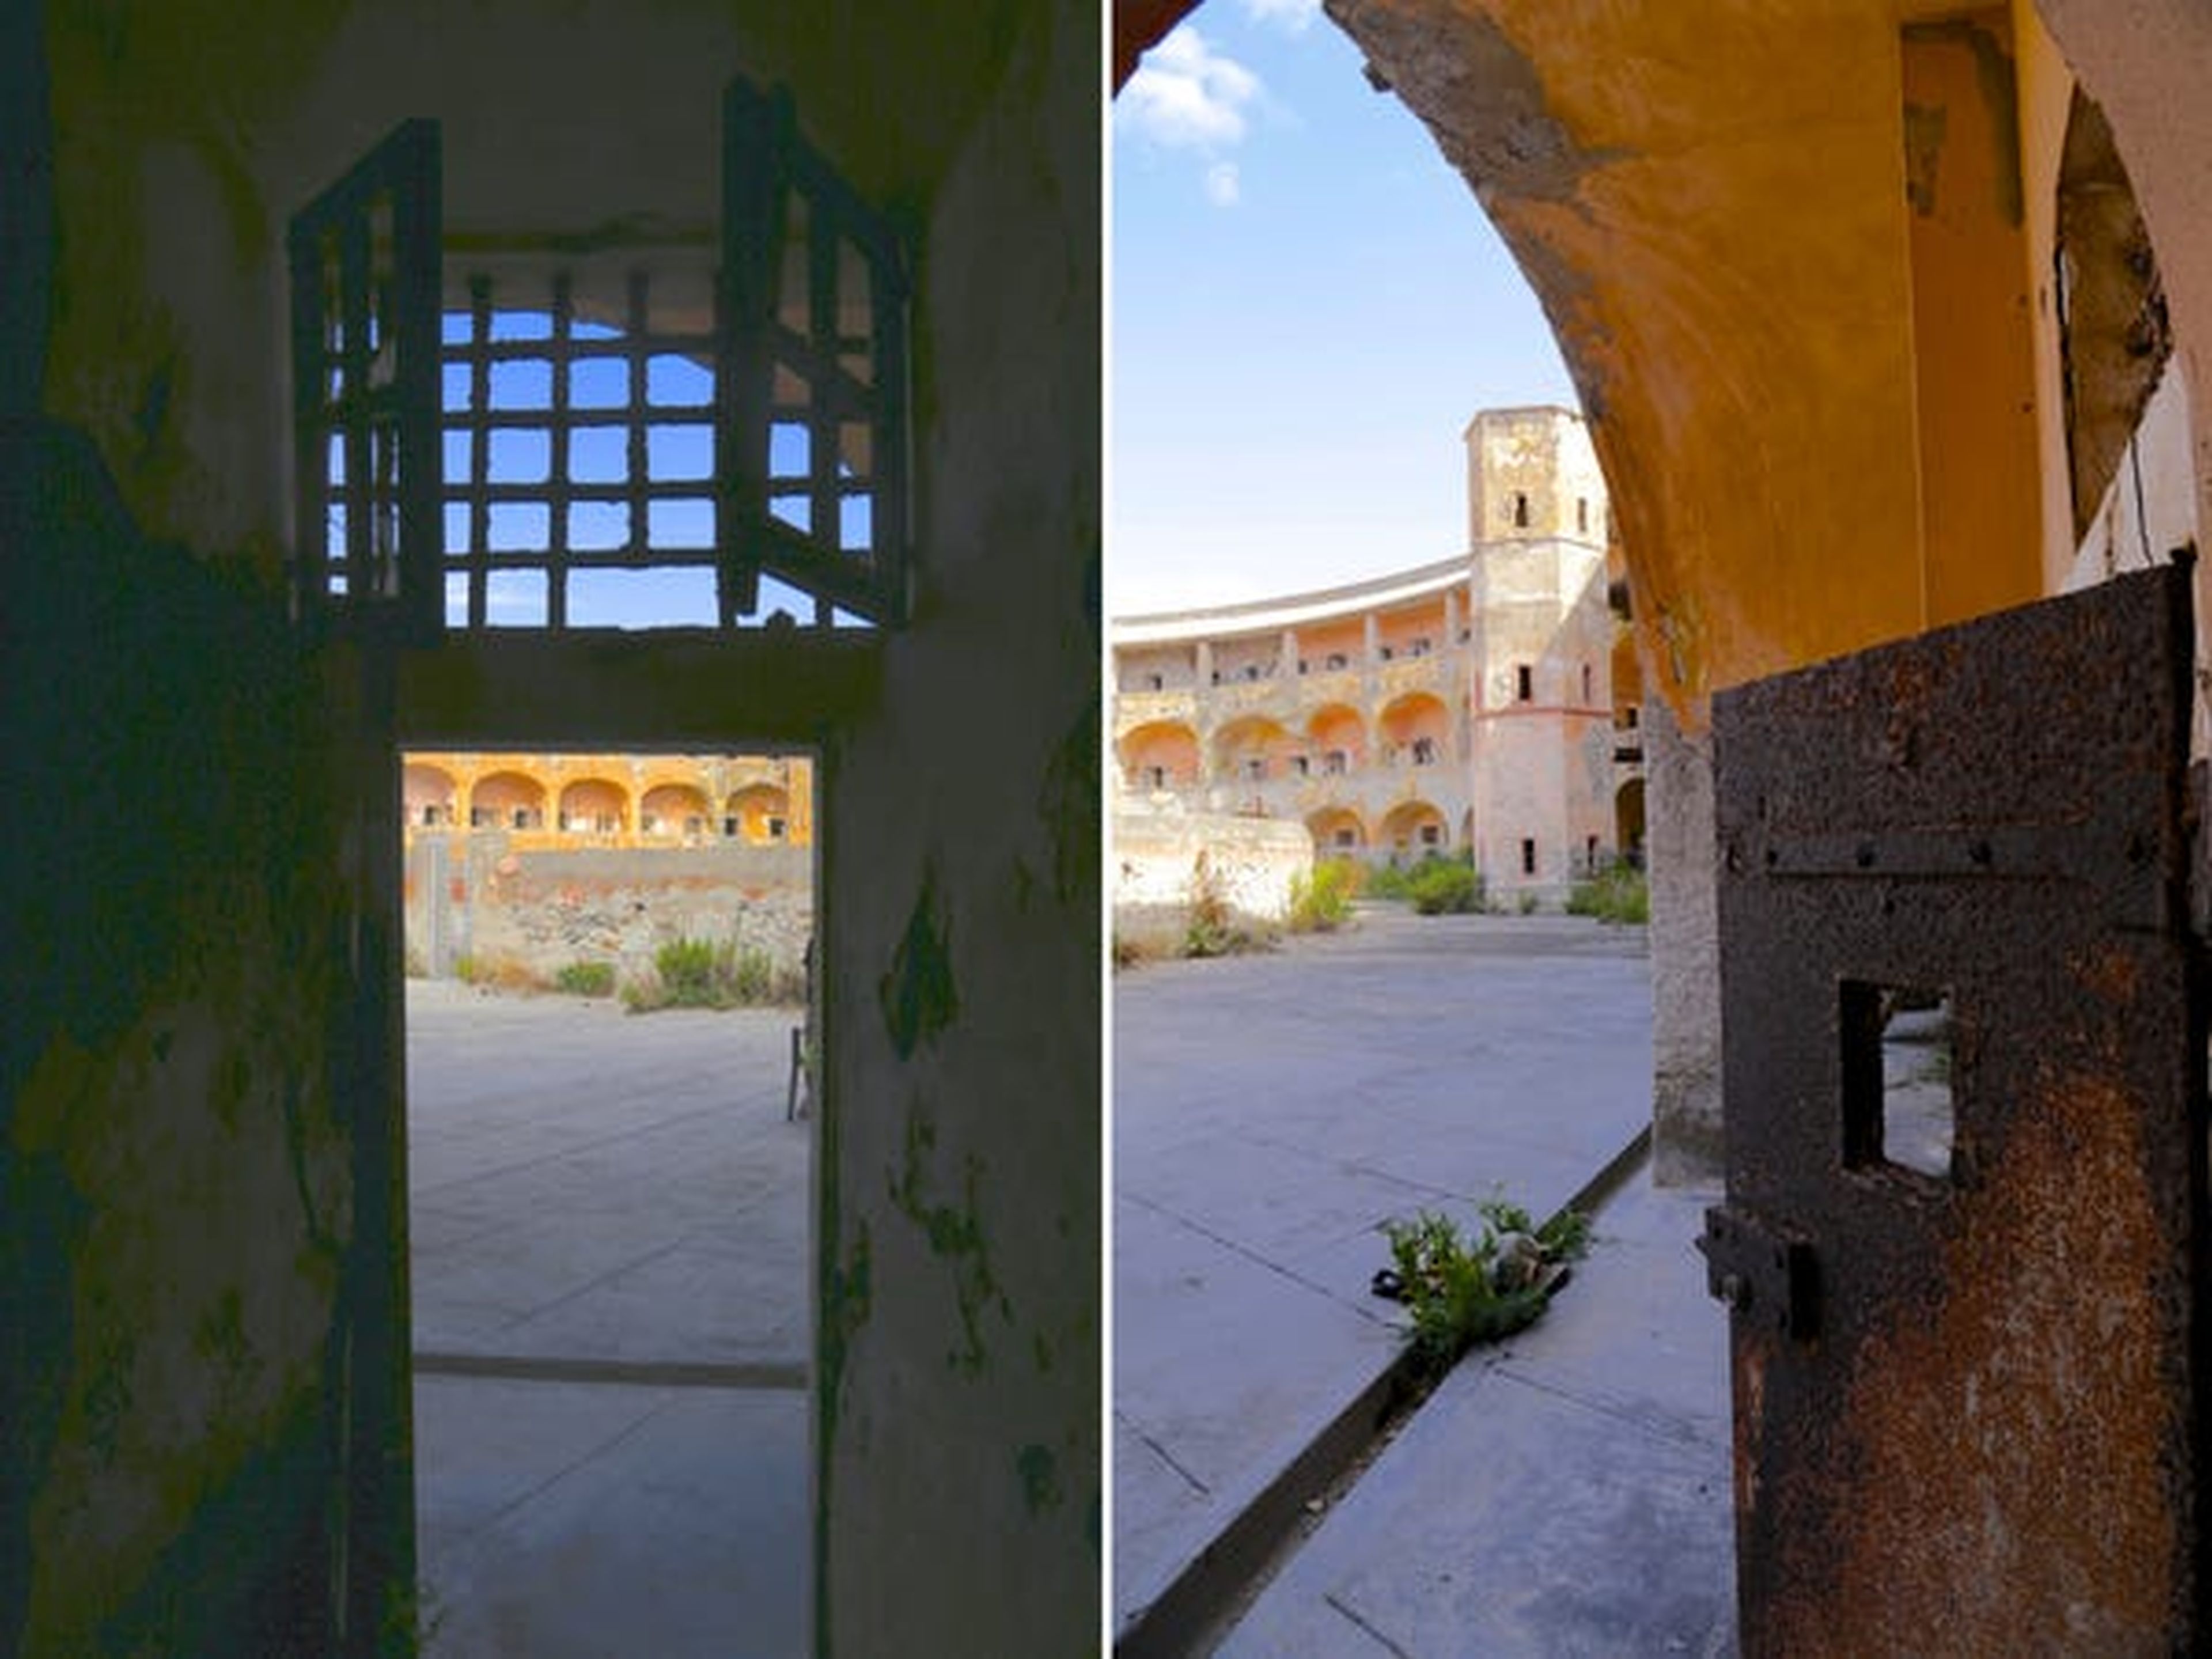 2 vistas desde el interior de las celdas de la prisión.